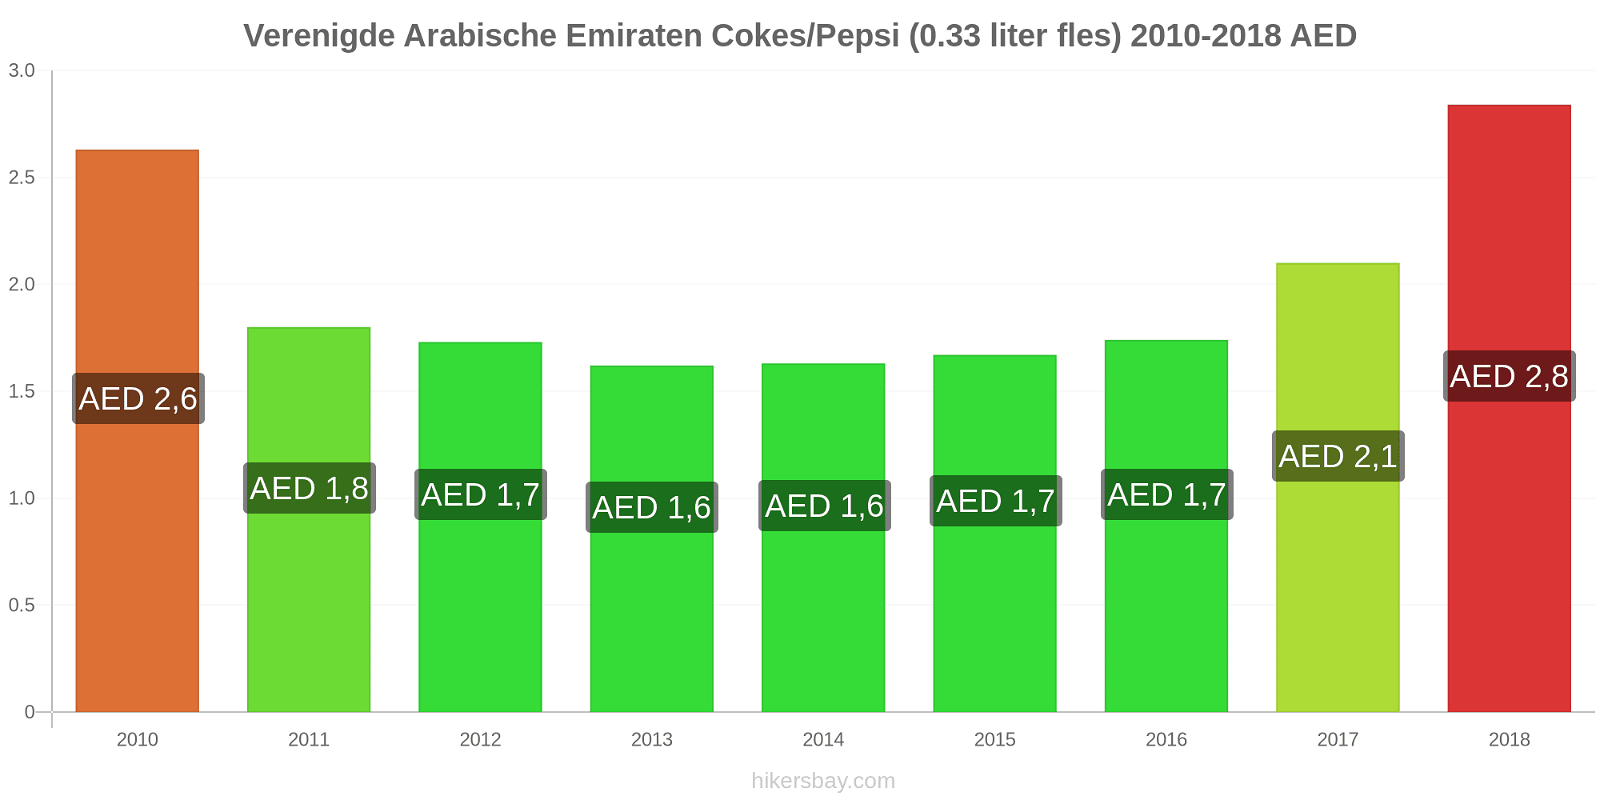 Verenigde Arabische Emiraten prijswijzigingen Cokes/Pepsi (0,33 literfles) hikersbay.com